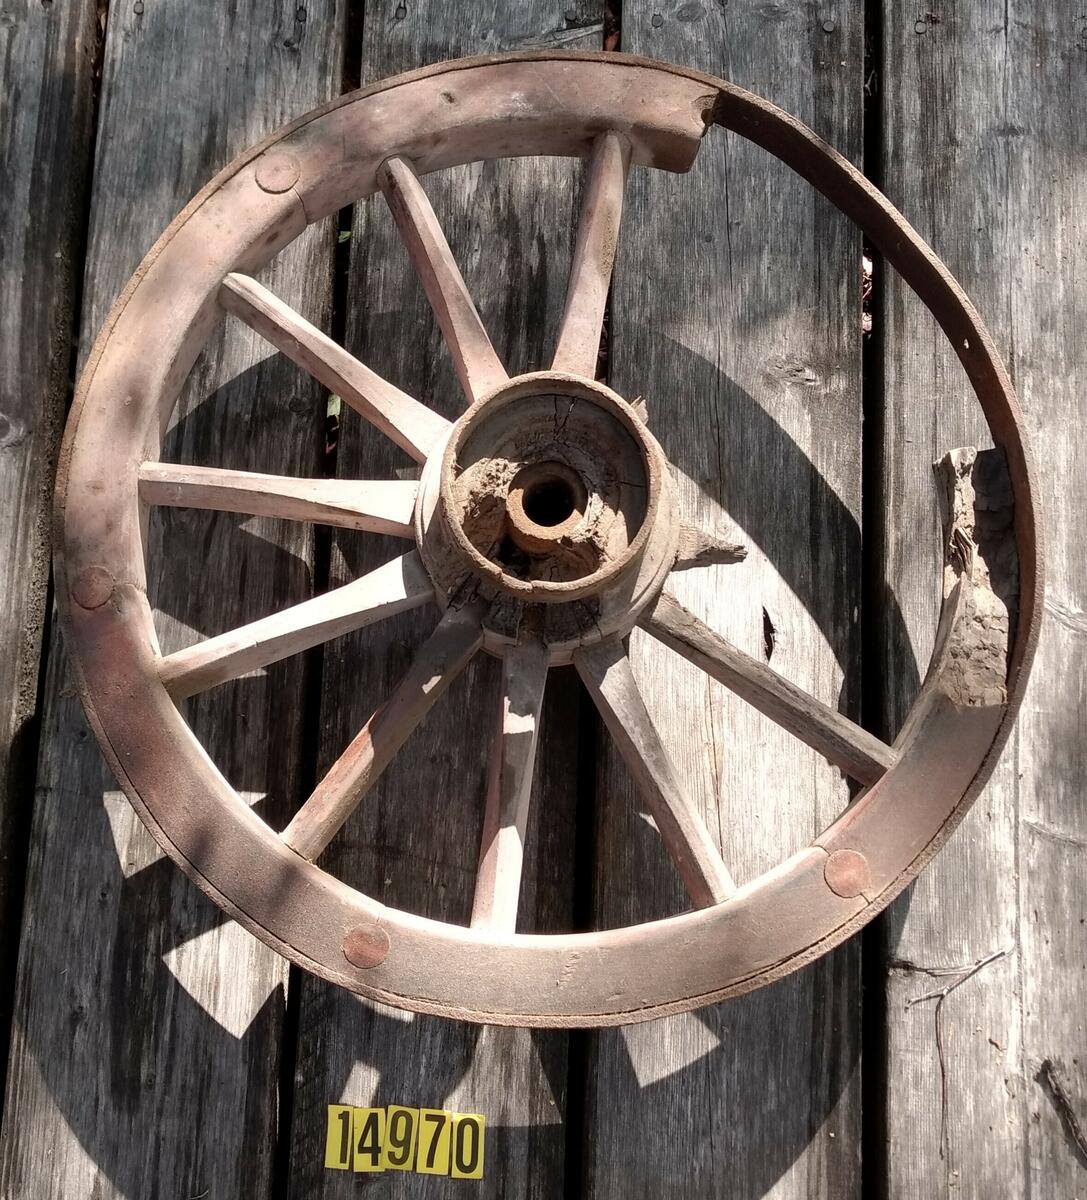 Rödmålat hjul med tolv ekrar, två tre saknas. Hel järnskoning runt nav och hjul. Hjulet / Löte är delat i sex delar med två ekrar. 1/6 av lötet saknas helt och 1/6 är skadad. Kan ev. vara MFF4141? De har bredd 63 cm. Plac: L1AA2.